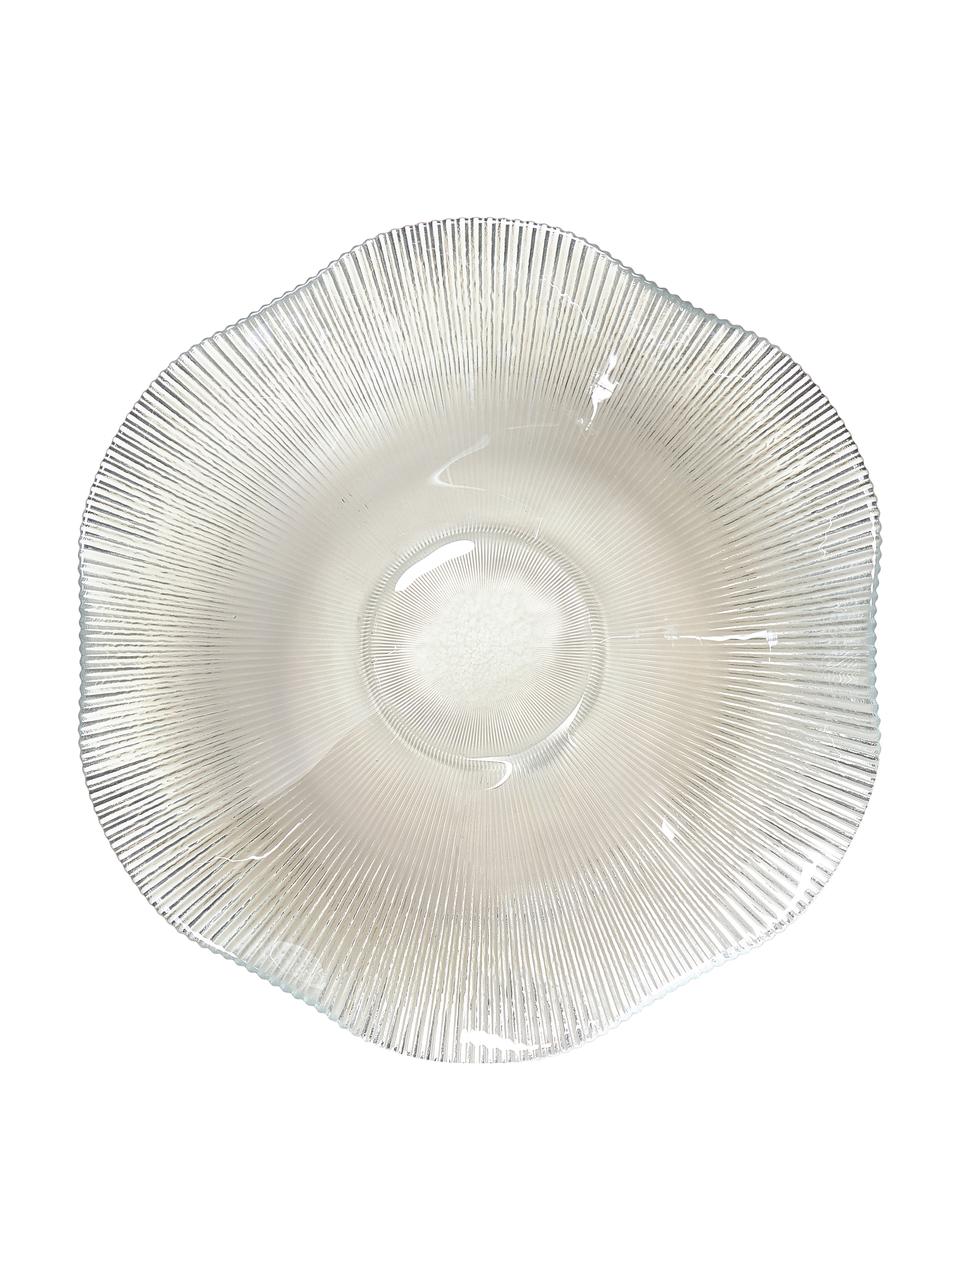 Glas-Salatschüssel Luce mit Rillenrelief in organischer Form, Glas, Transparent, Ø 36 x H 8 cm